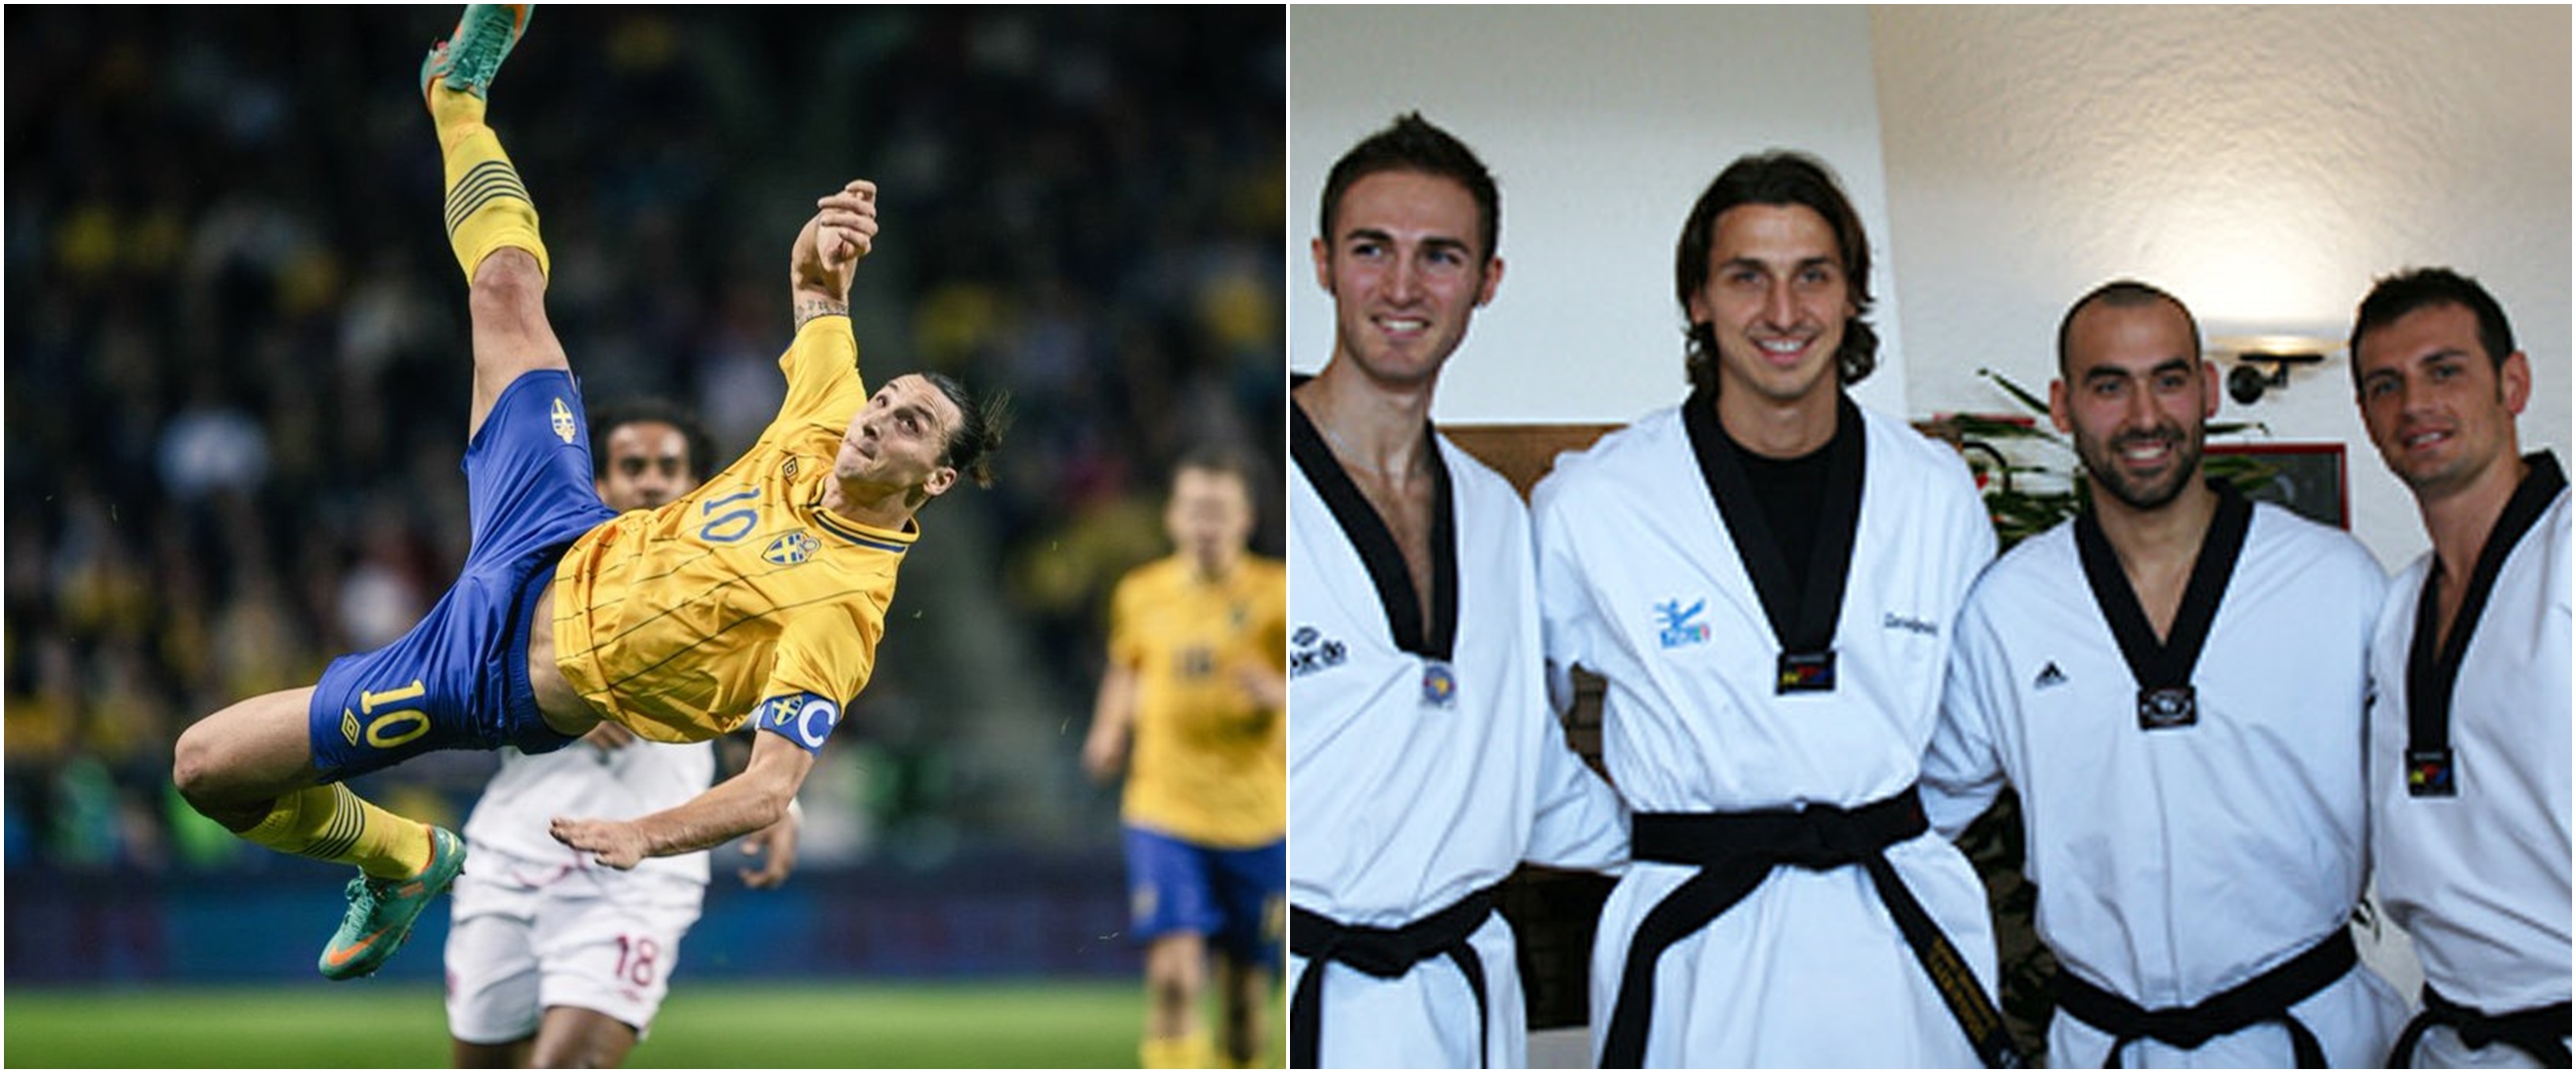 Cetak gol salto dari jarak 29 meter, Ibrahimovic ternyata taekwondoin